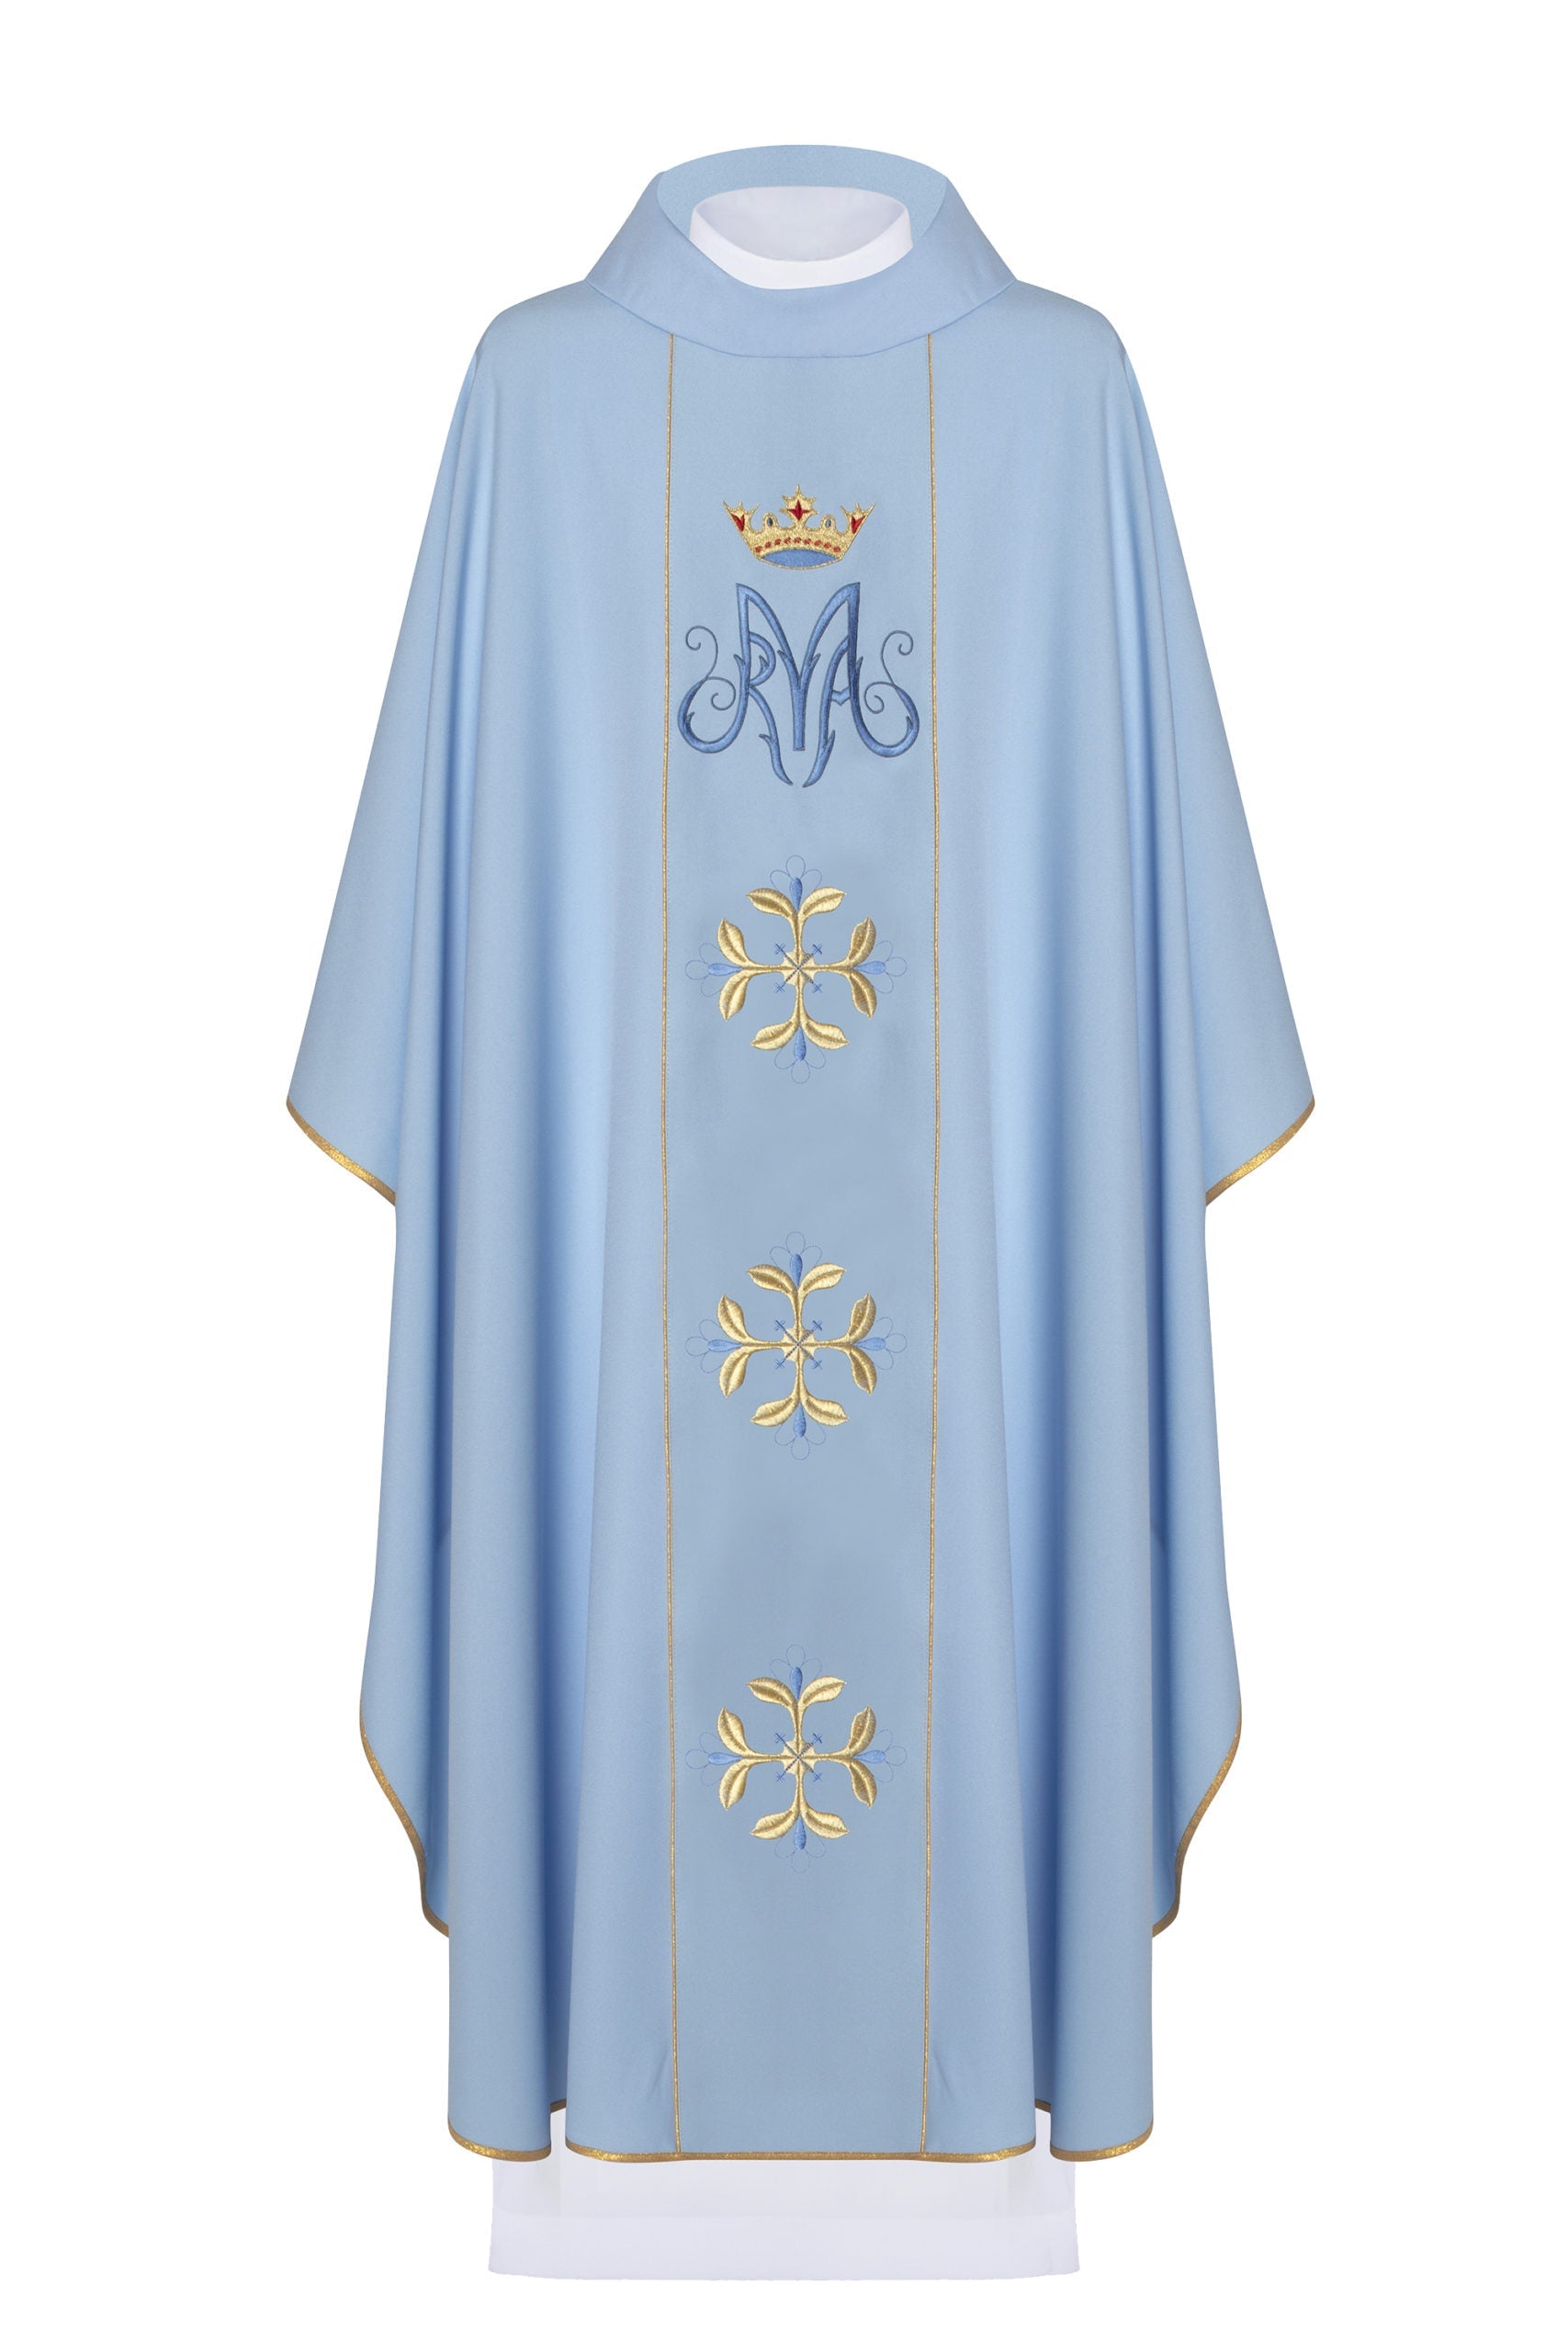 Niebieski ornat liturgiczny maryjny z pasem